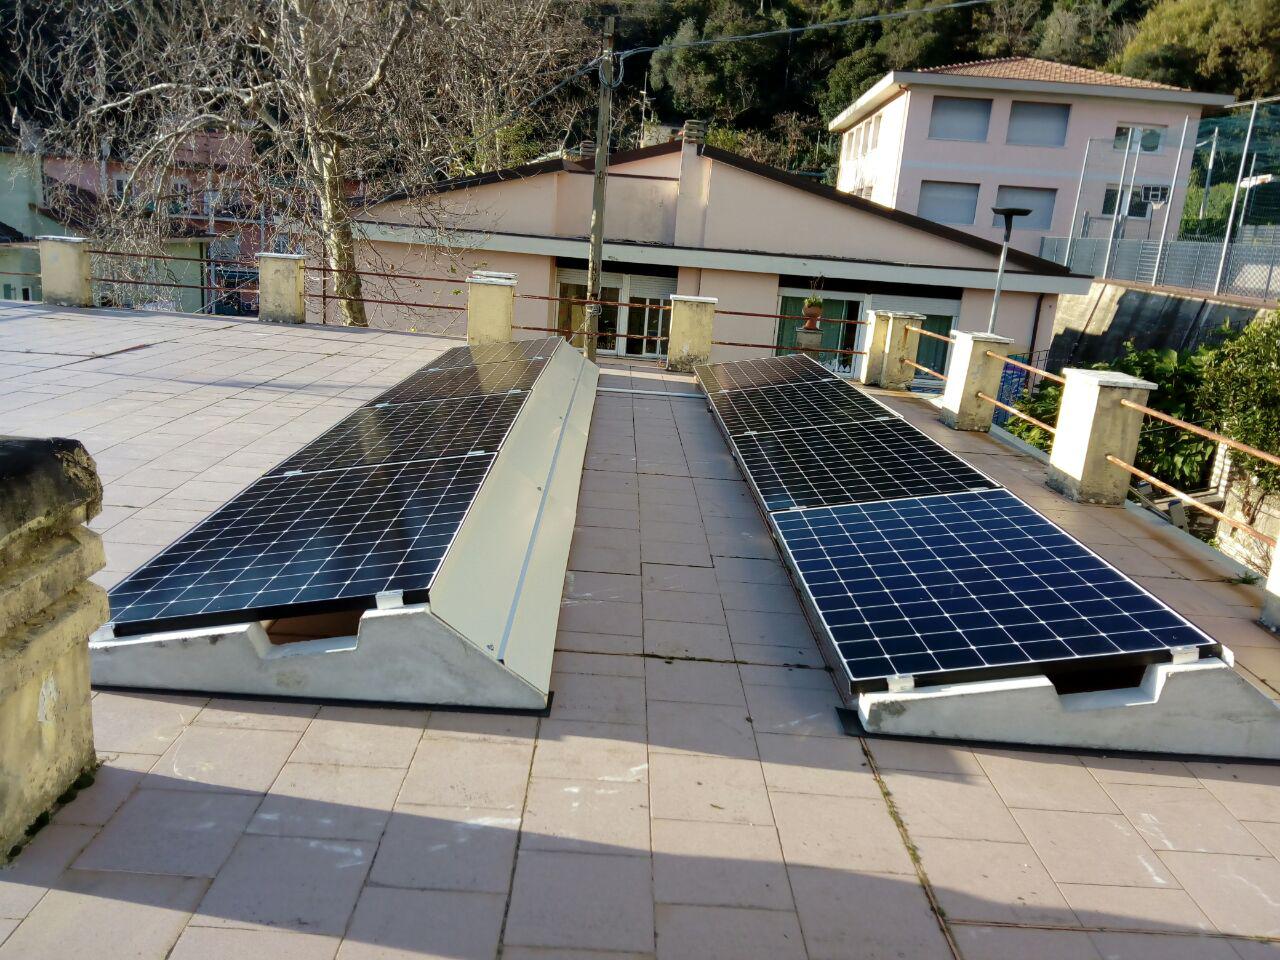 Impianto fotovoltaico 3,2 kW con pannelli solari Sunpower installato su tetto piano con zavorre antivento